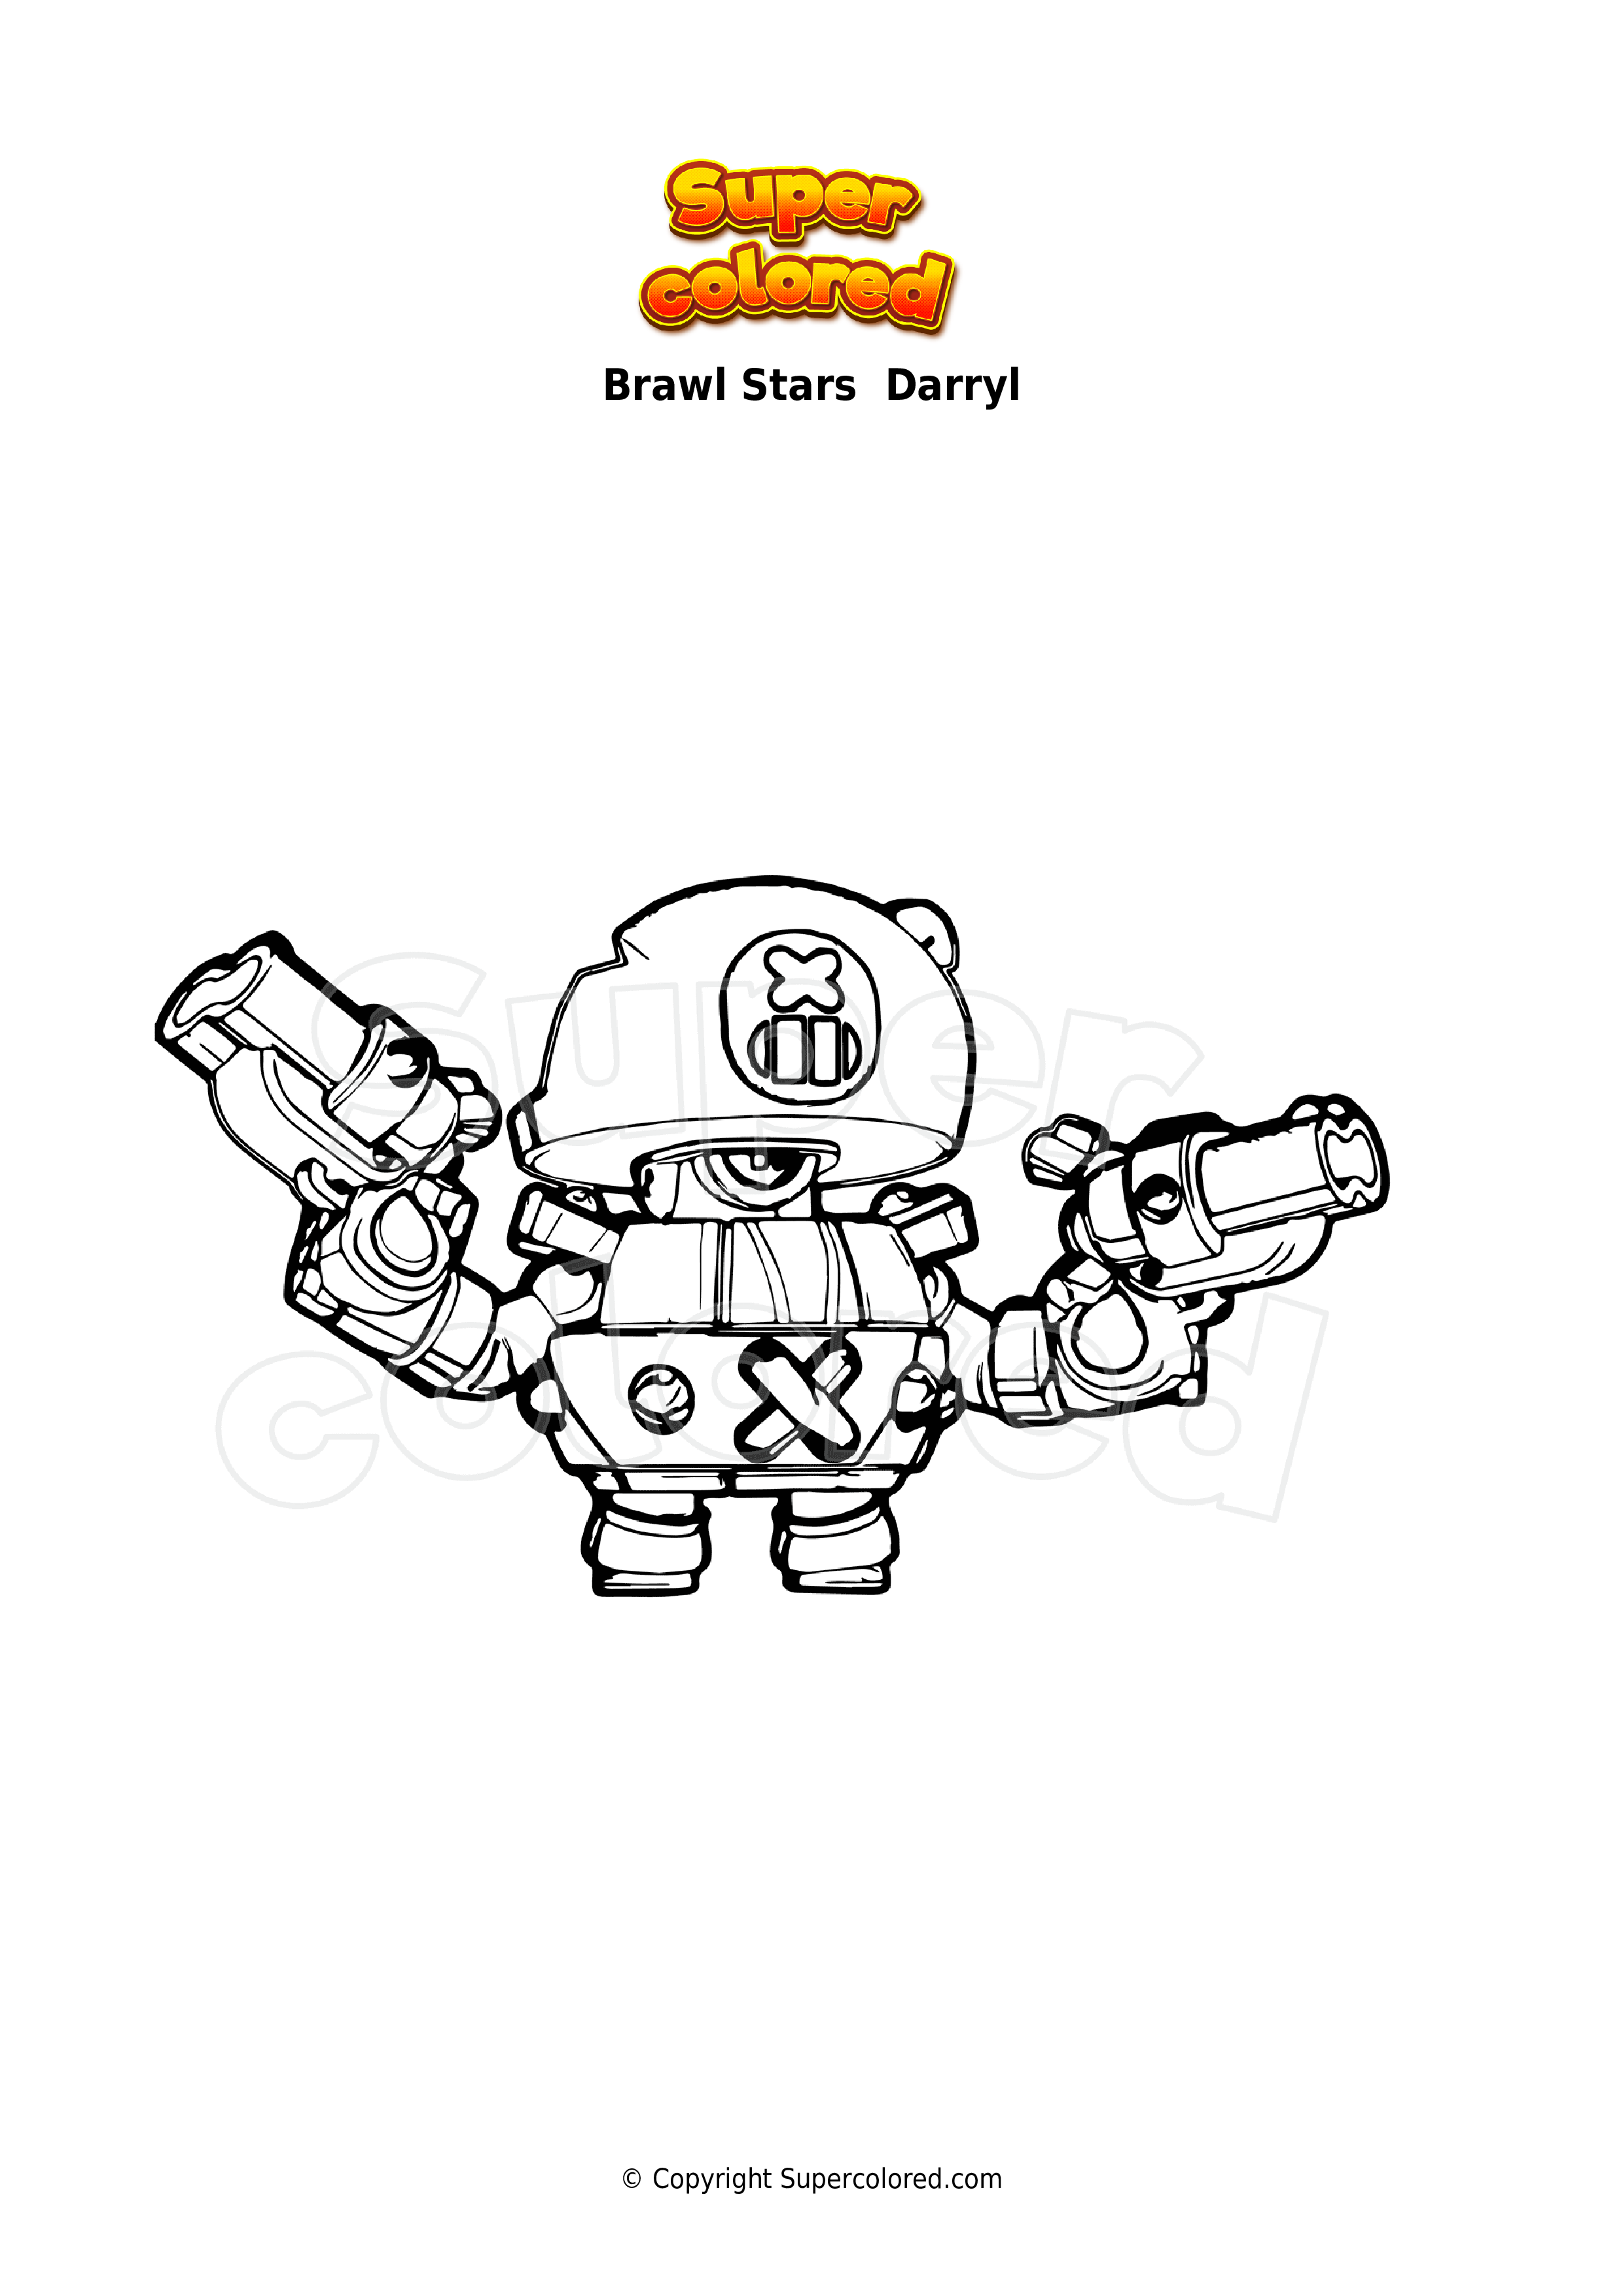 Dibujo Para Colorear Brawl Stars Darryl Supercolored Com - dibujos para colorear de brawl stars darryl